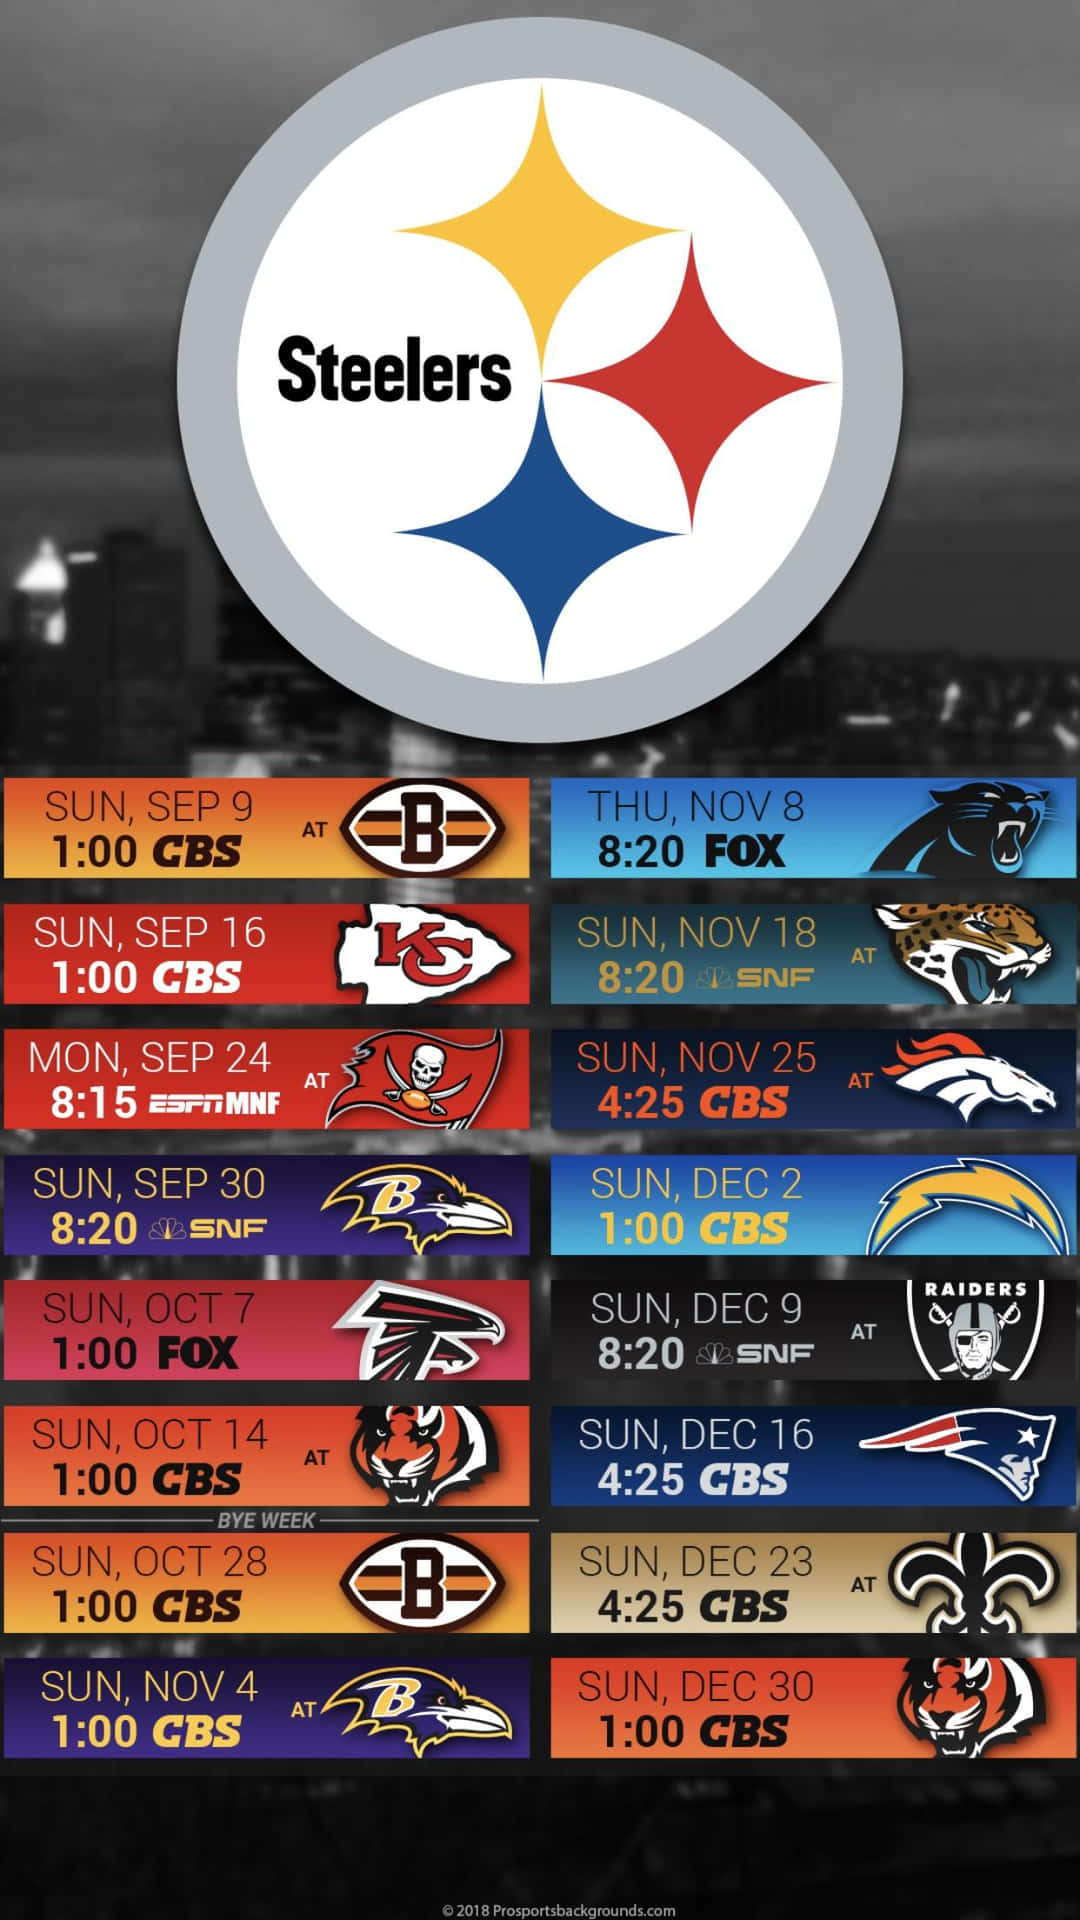 Mantenteal Día Con Lo Último De Los Steelers En Tu Iphone. Fondo de pantalla